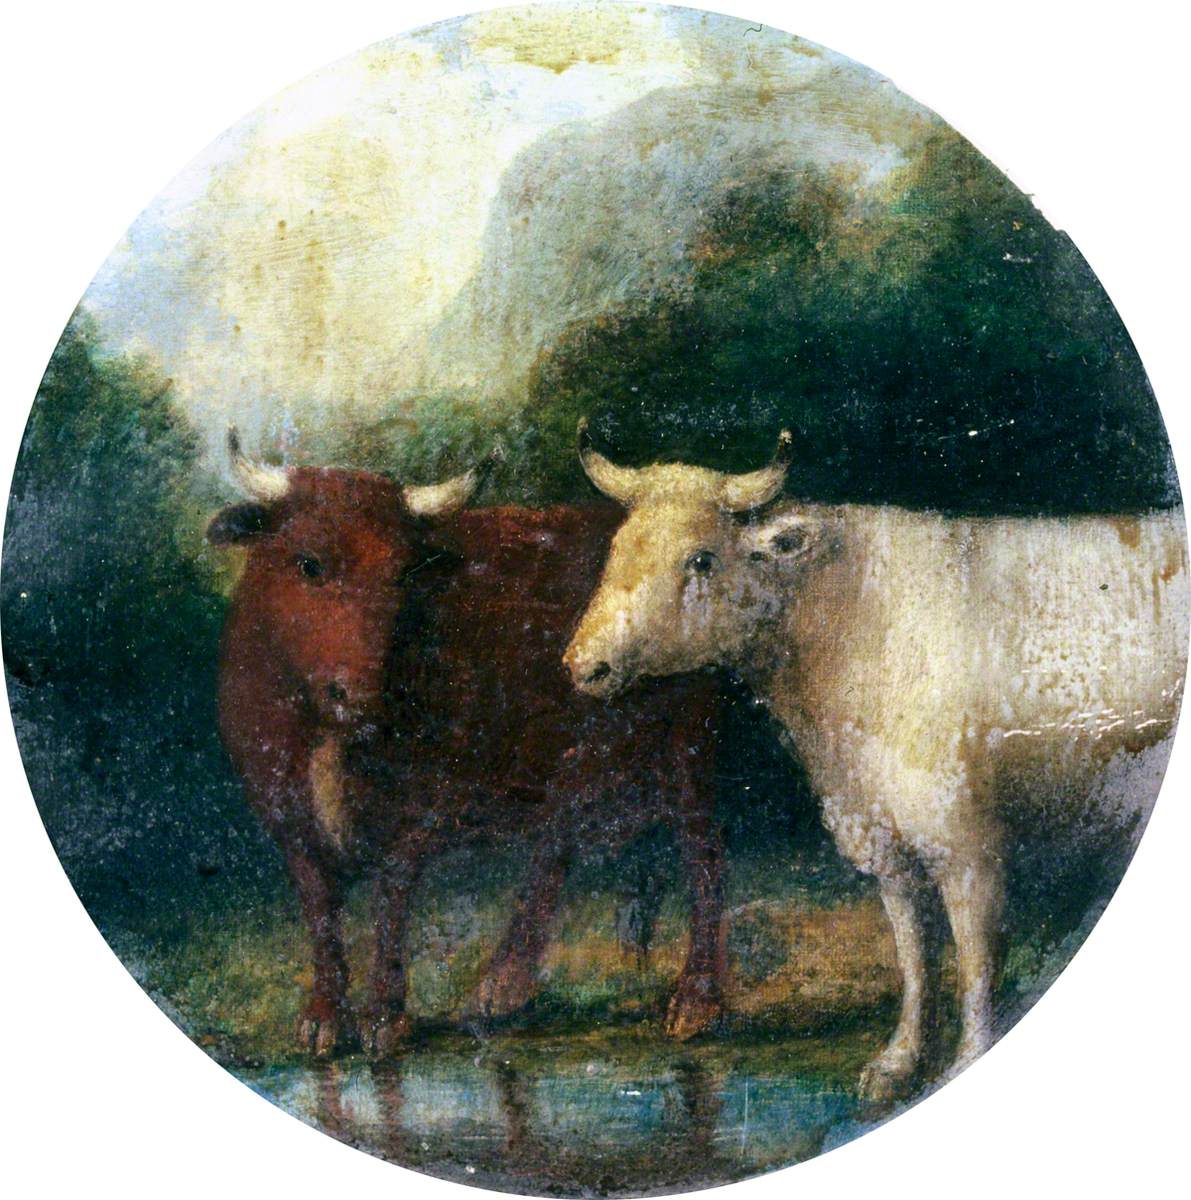 Cattle in a Mountain Landscape